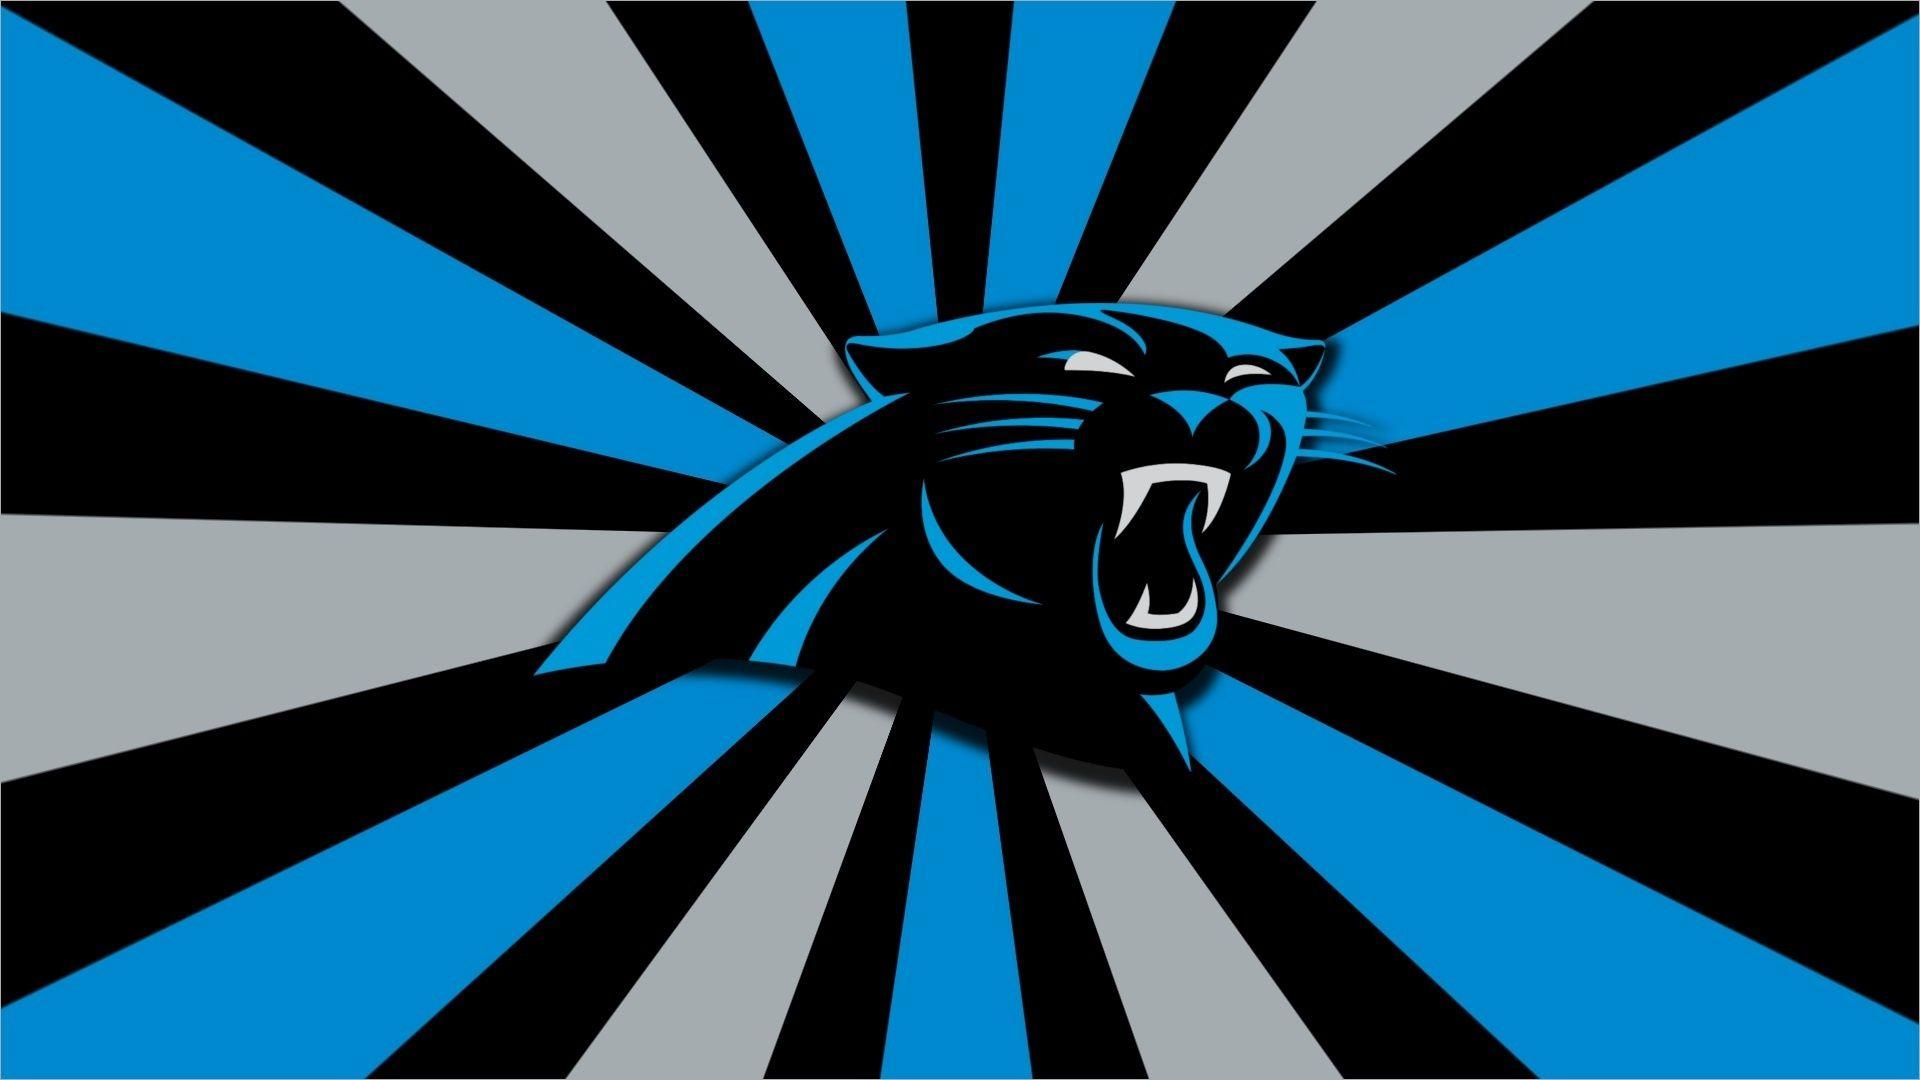 Carolina Panthers Logo Wallpaper HD